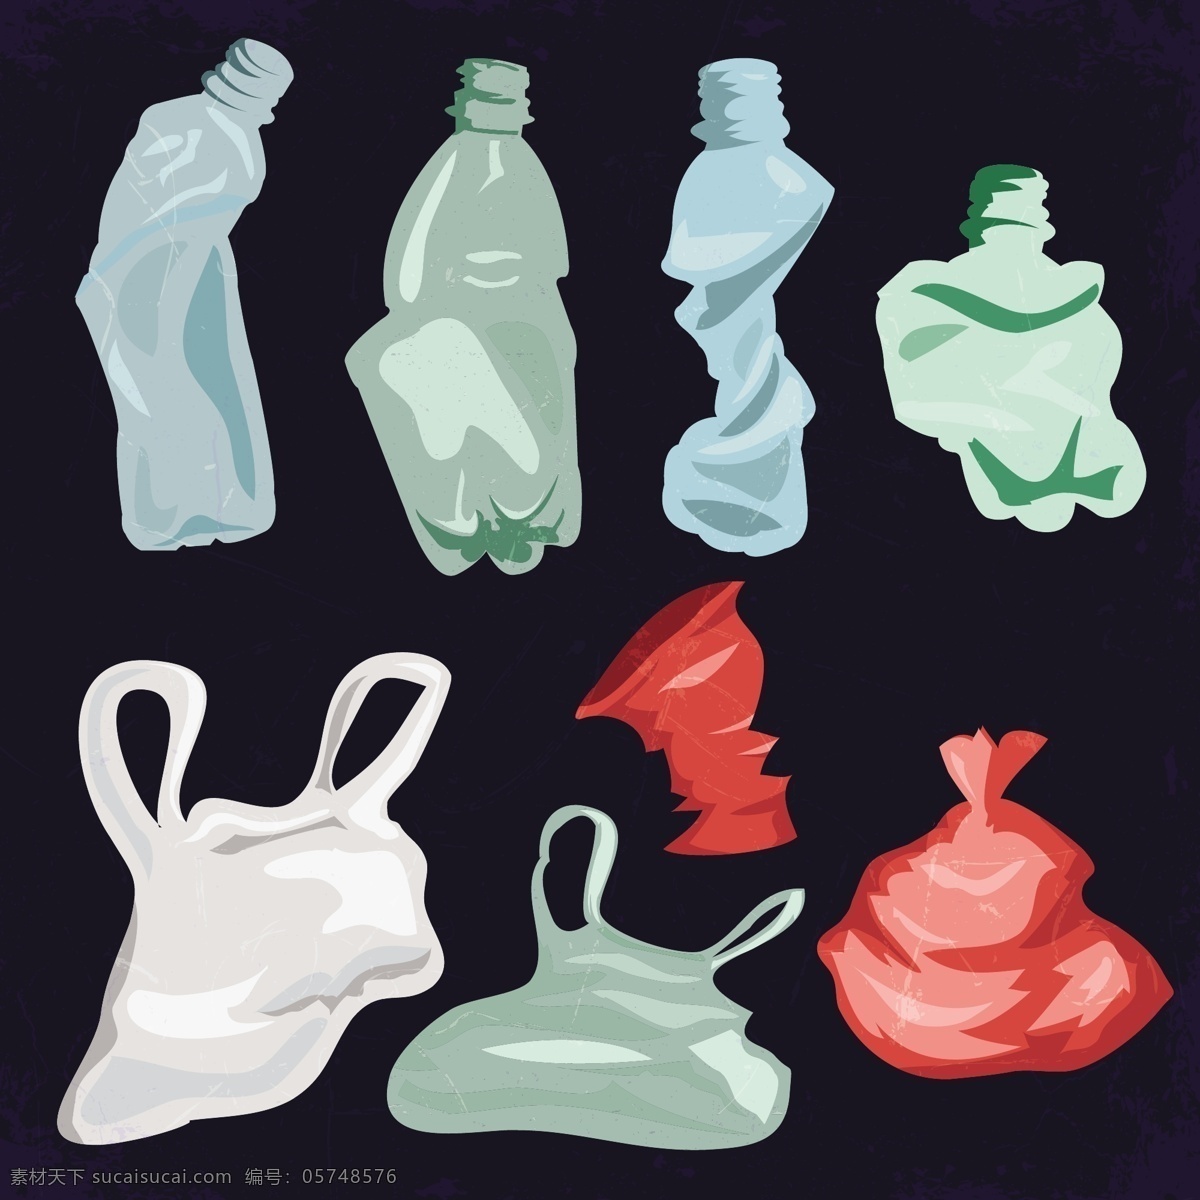 垃圾袋 塑料 瓶子 矢量 袋子 塑料瓶子 矢量素材 垃圾袋子